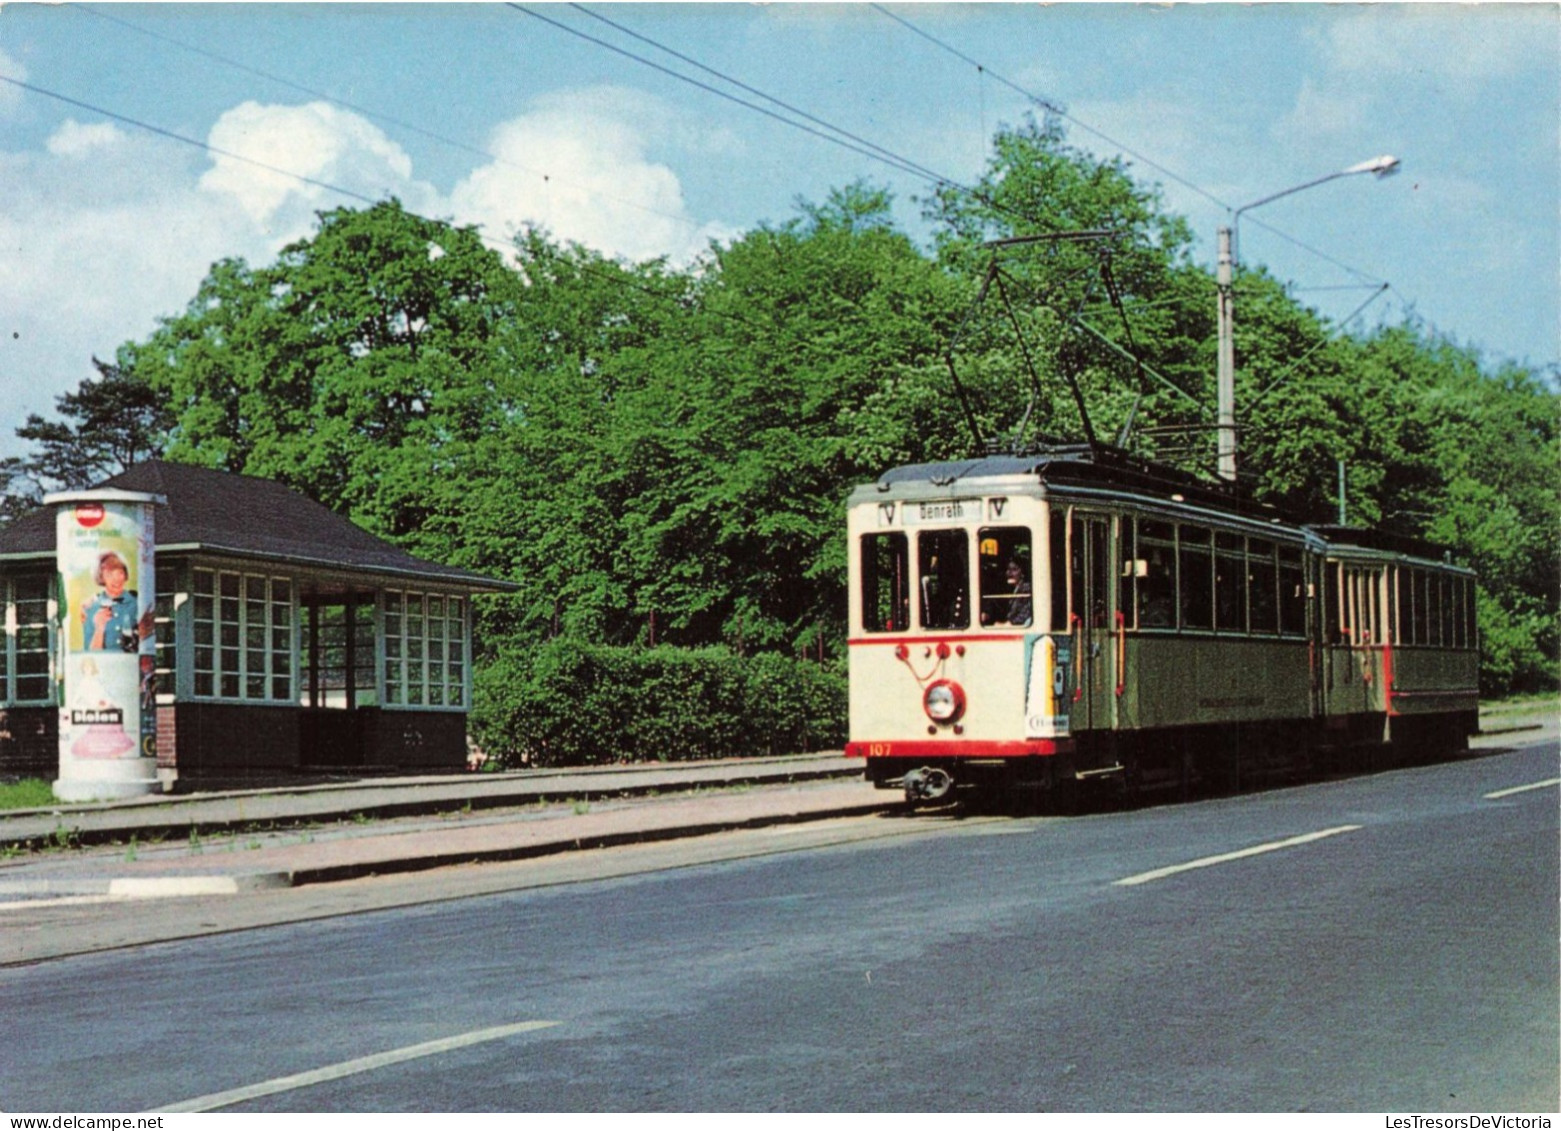 TRANSPORT - Triebwagen 107 Mit Beiwagen - Colorisé - Carte Postale - Strassenbahnen